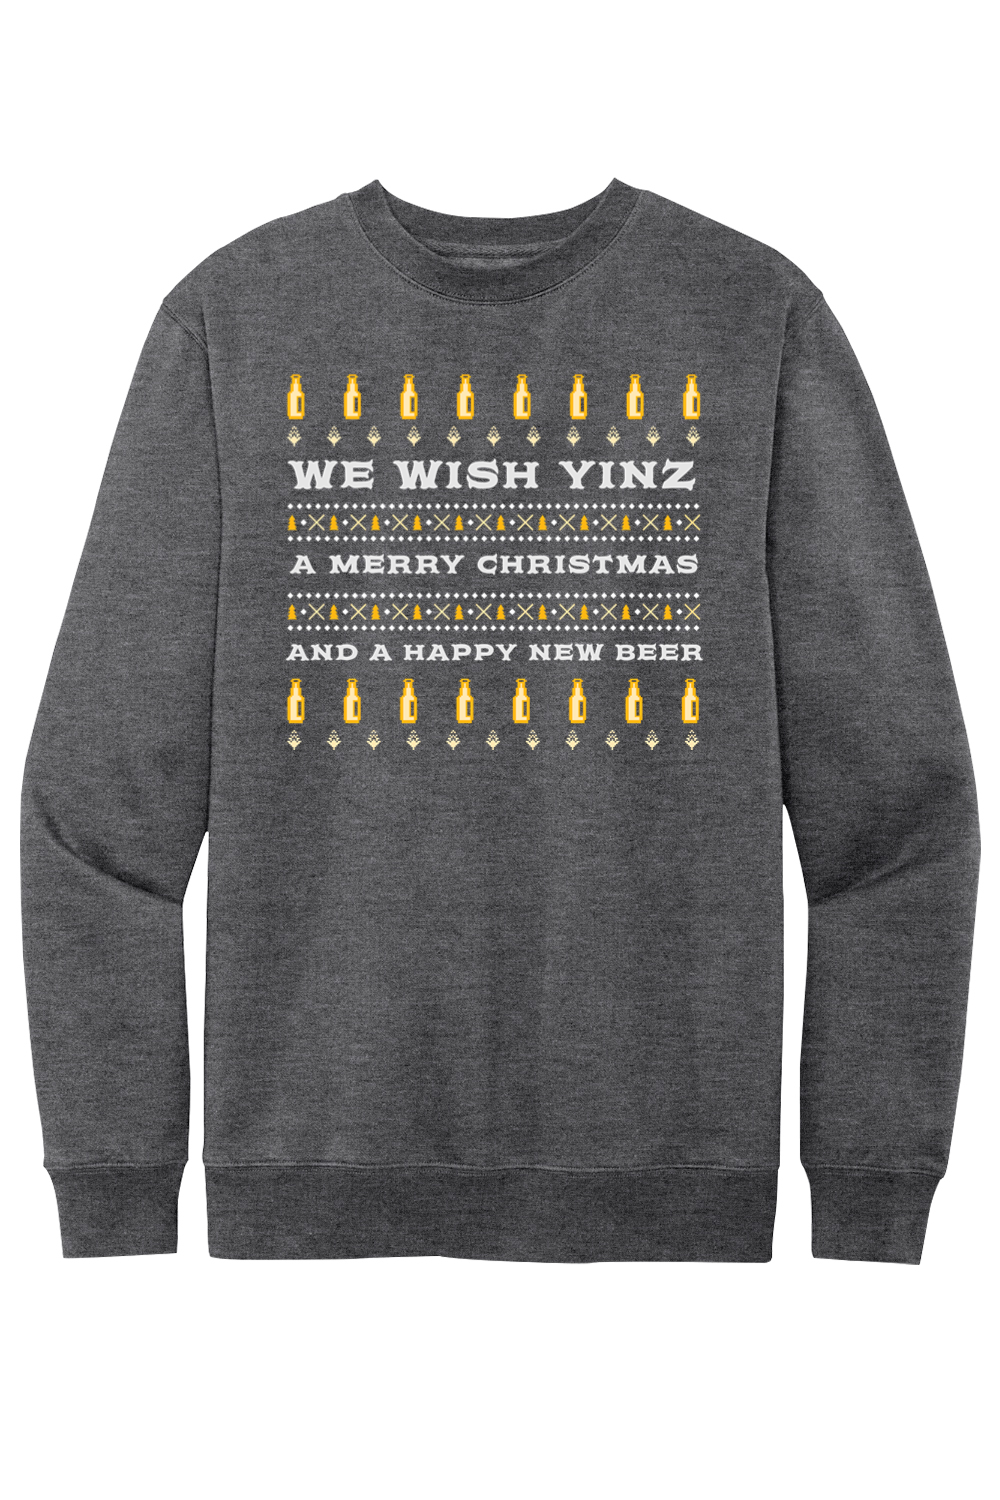 We Wish Yinz a Merry Christmas - Ugly Christmas Sweater - Fleece Crew Sweatshirt - Yinzylvania